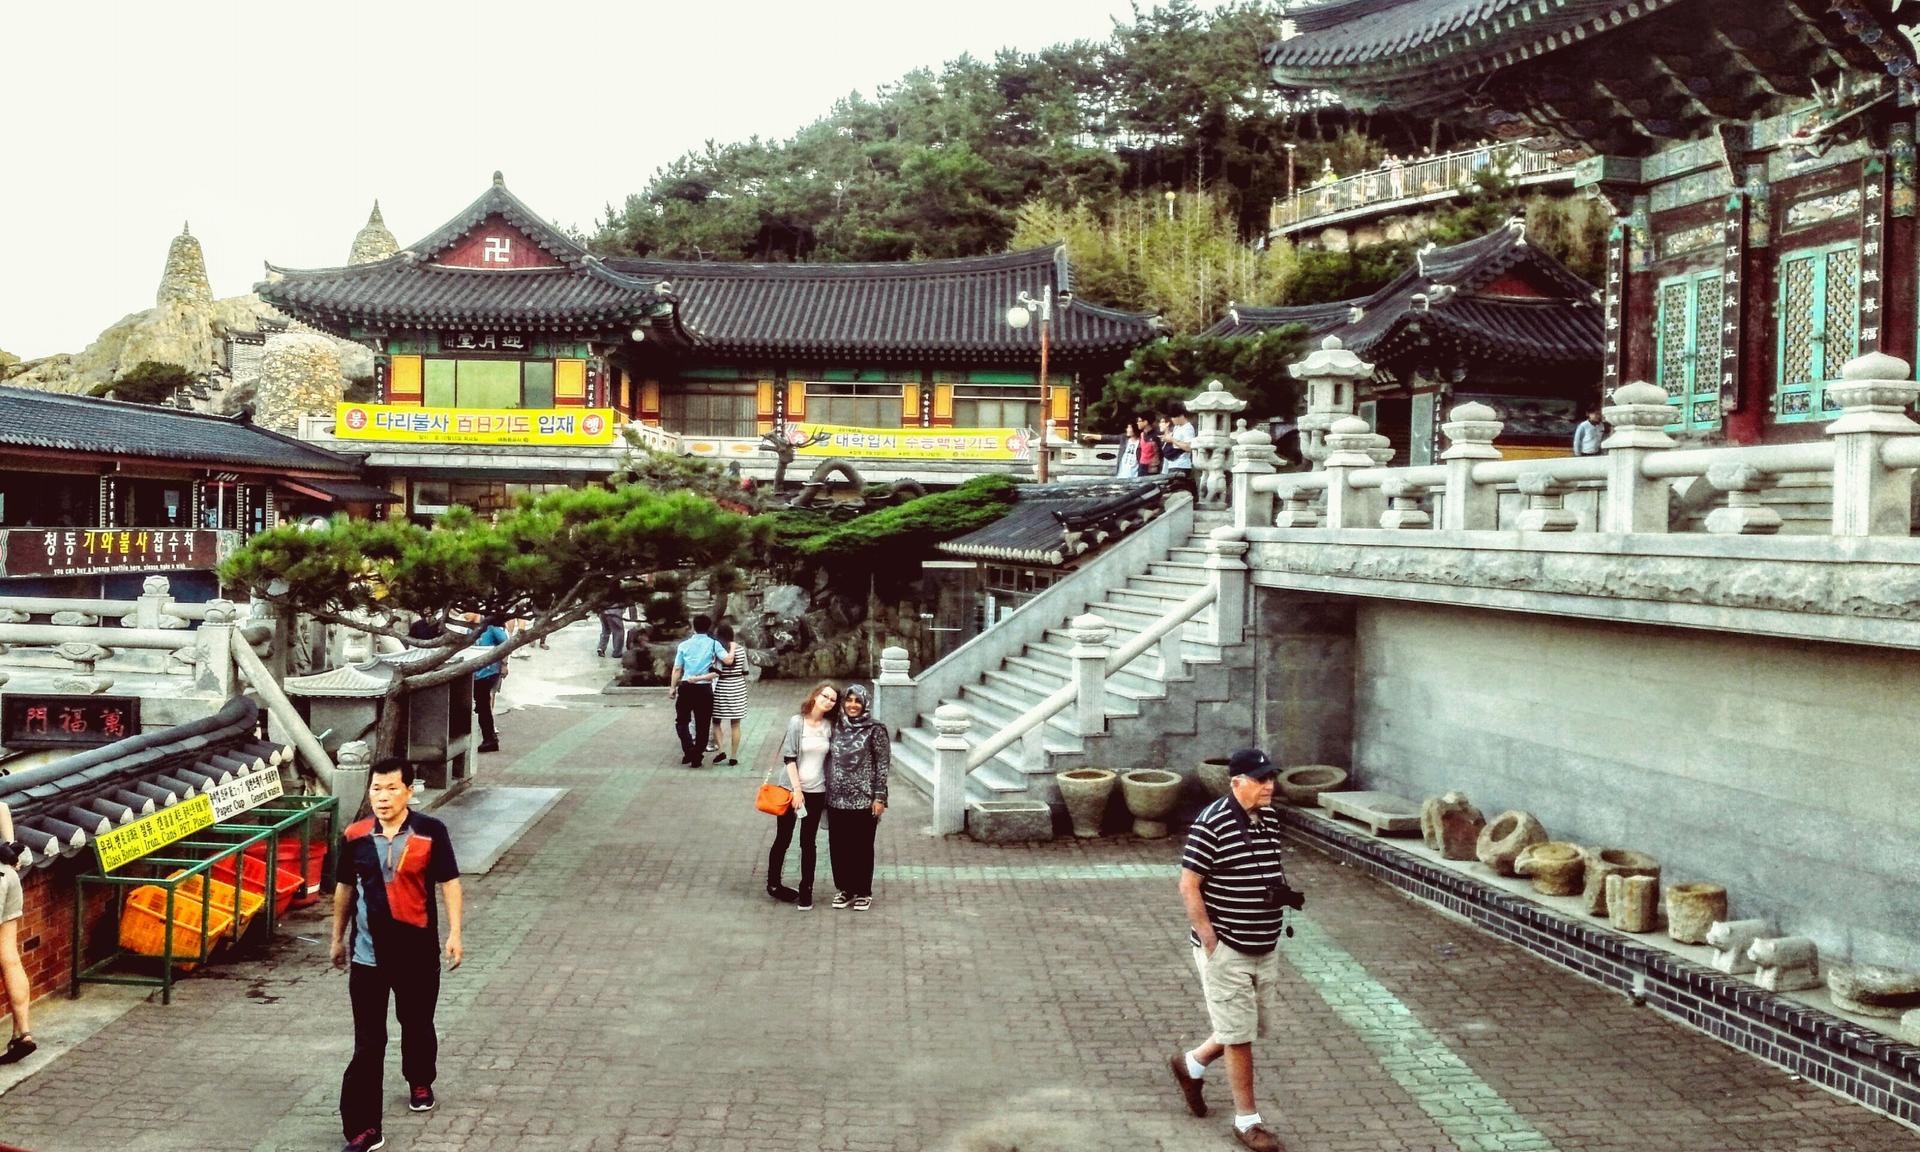 The Yonggusan Temple